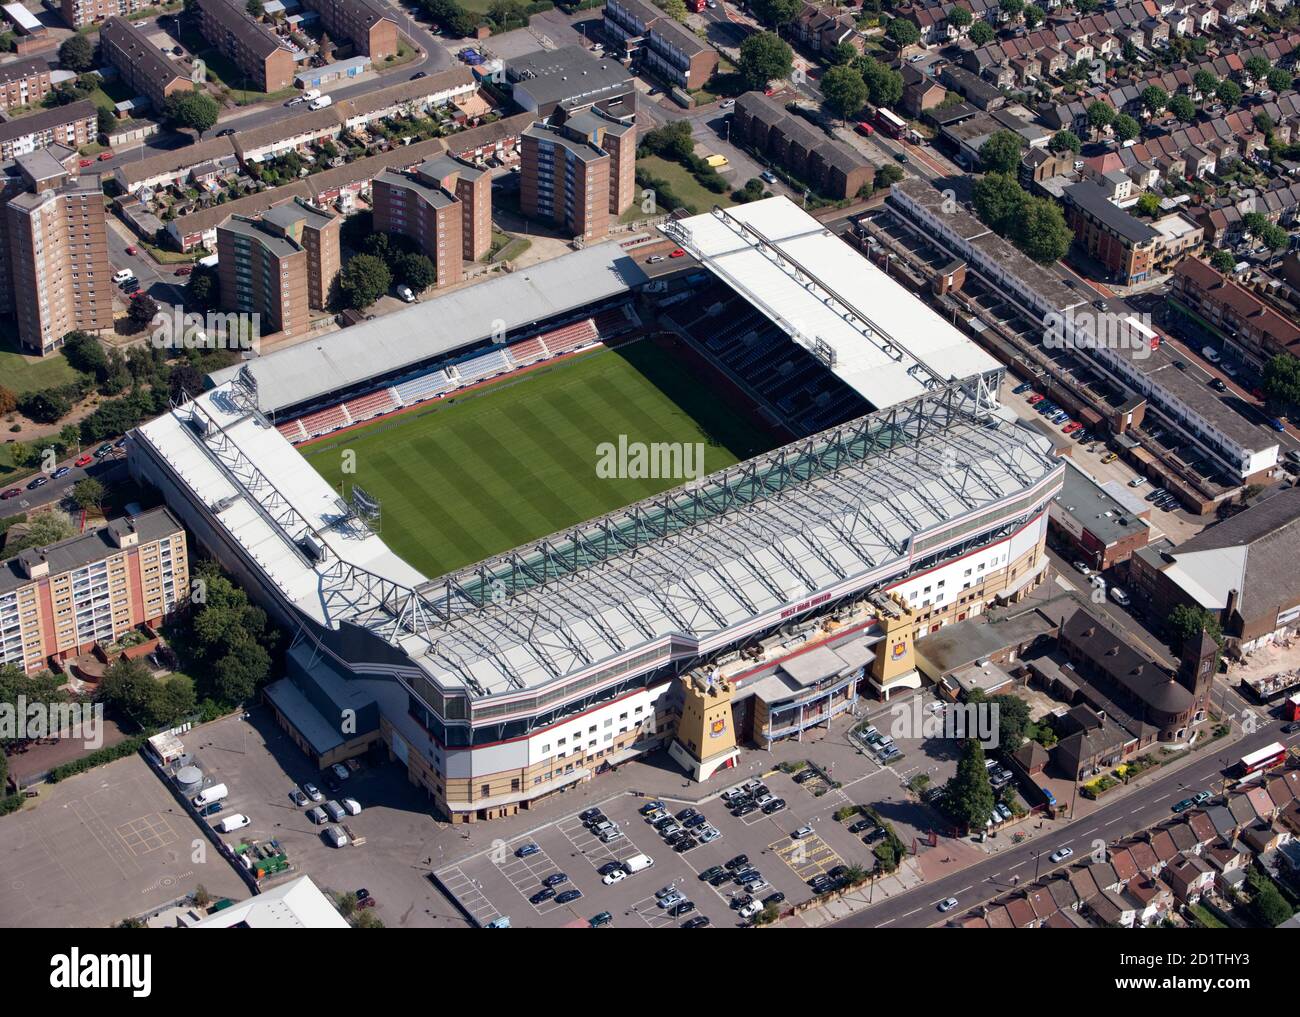 UPTON PARK, Londres. Vue aérienne de Boleyn Ground, la maison du West Ham United FC depuis 1904. Photographié en 2009. Banque D'Images